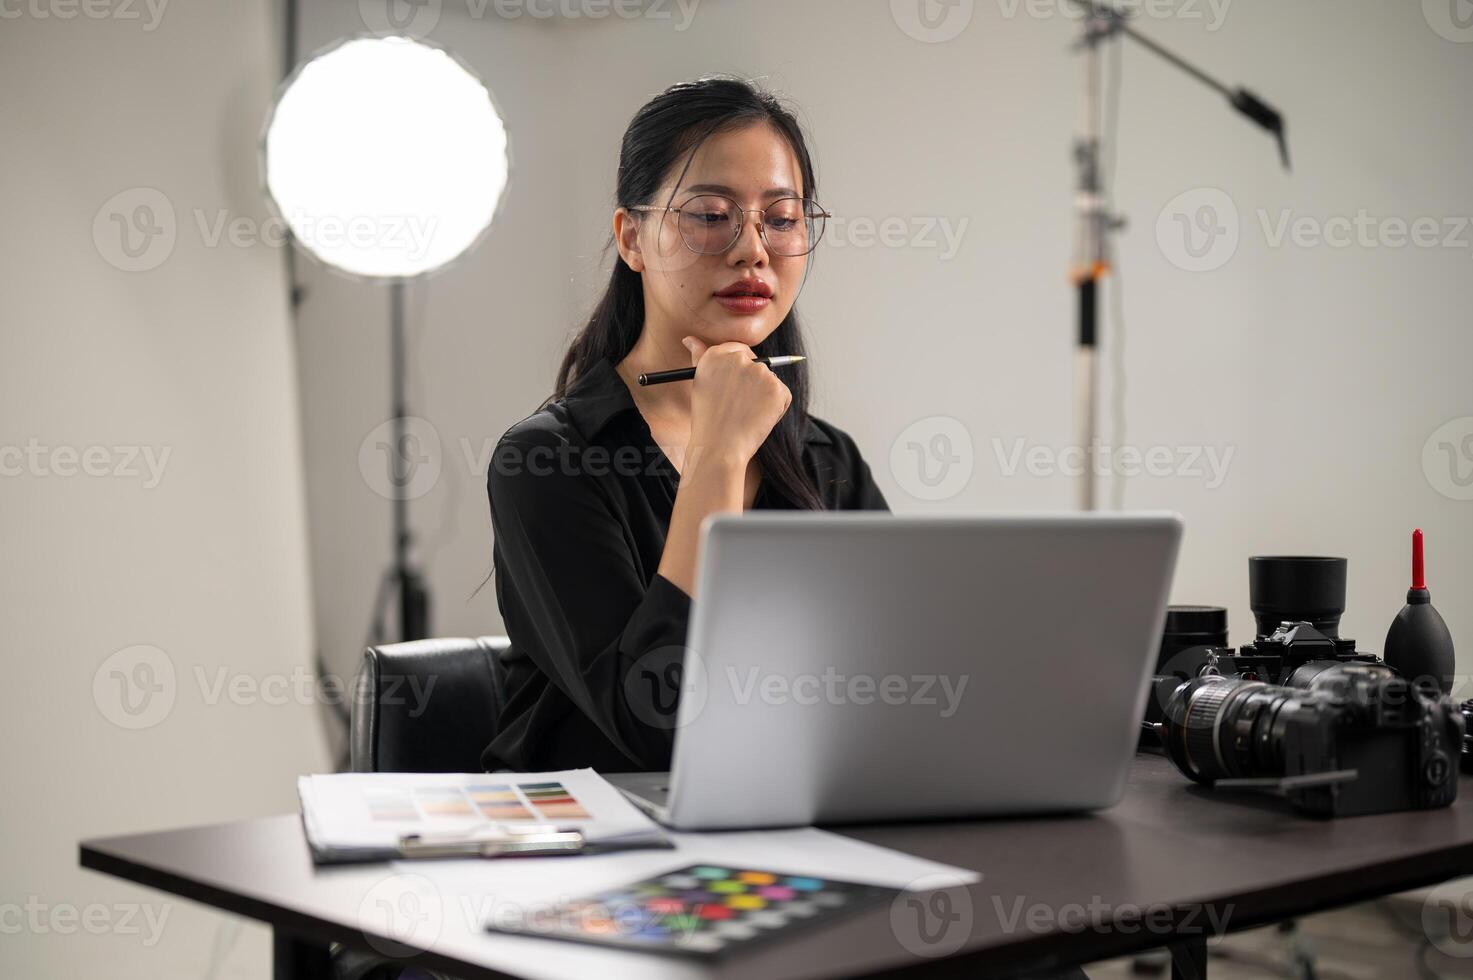 un confidente asiático hembra fotógrafo es trabajando en su computadora portátil, trabajando en un Sesión de fotos estudio.